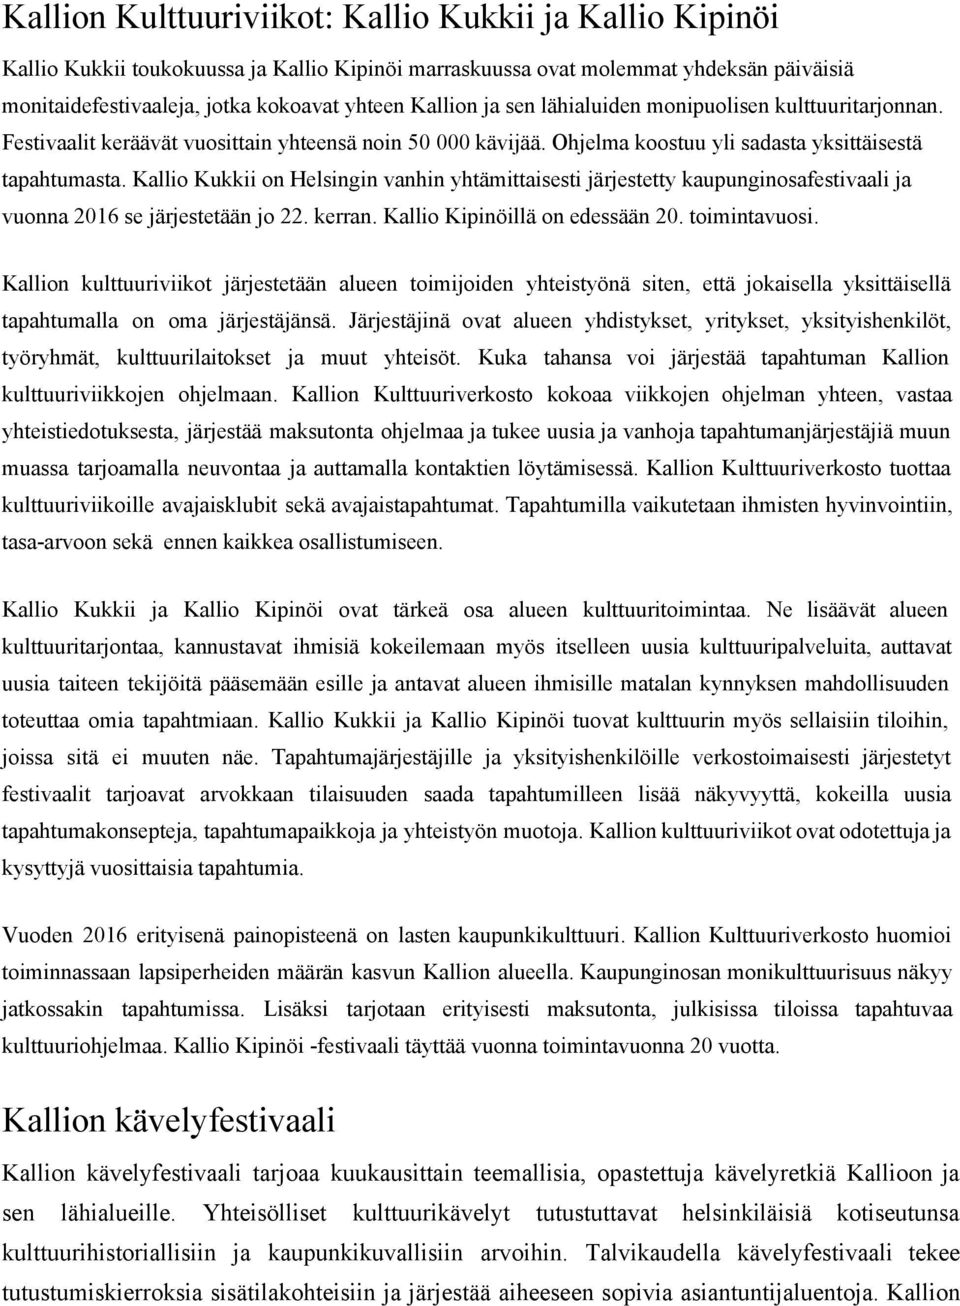 Kallio Kukkii on Helsingin vanhin yhtämittaisesti järjestetty kaupunginosafestivaali ja vuonna 2016 se järjestetään jo 22. kerran. Kallio Kipinöillä on edessään 20. toimintavuosi.